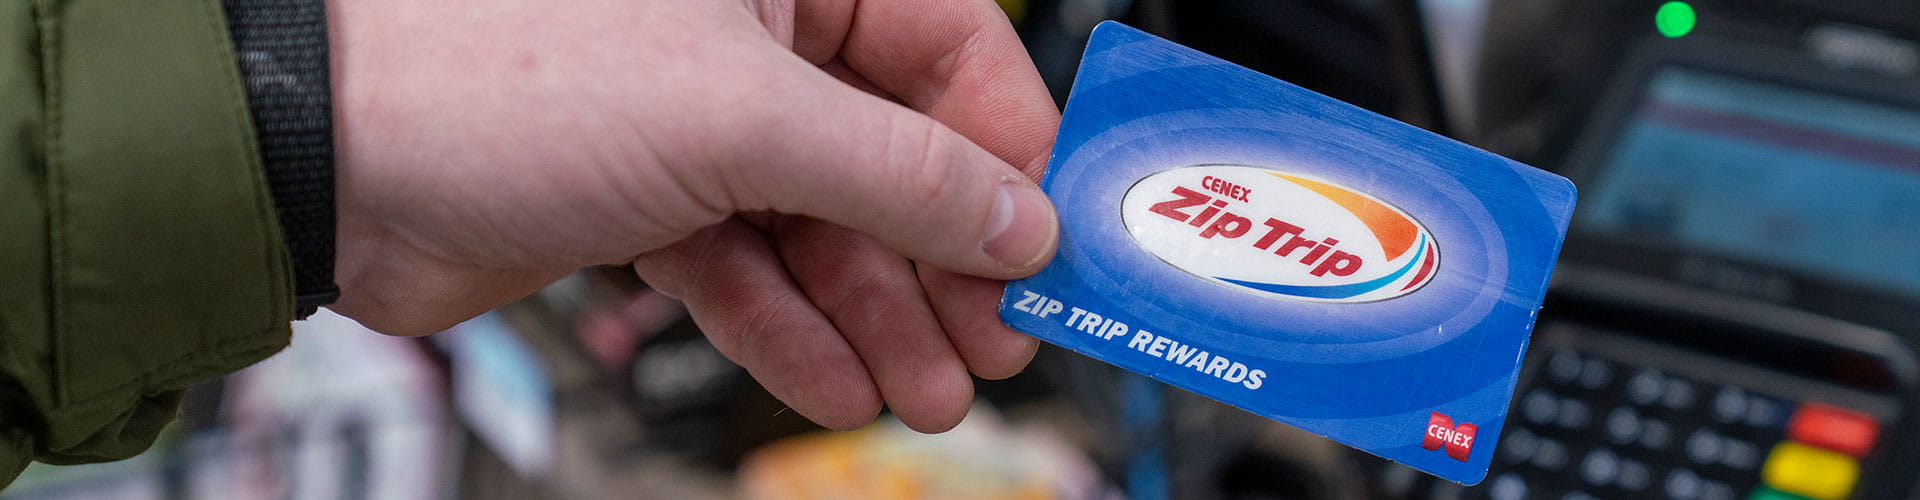 Cenex Zip Trip Rewards card